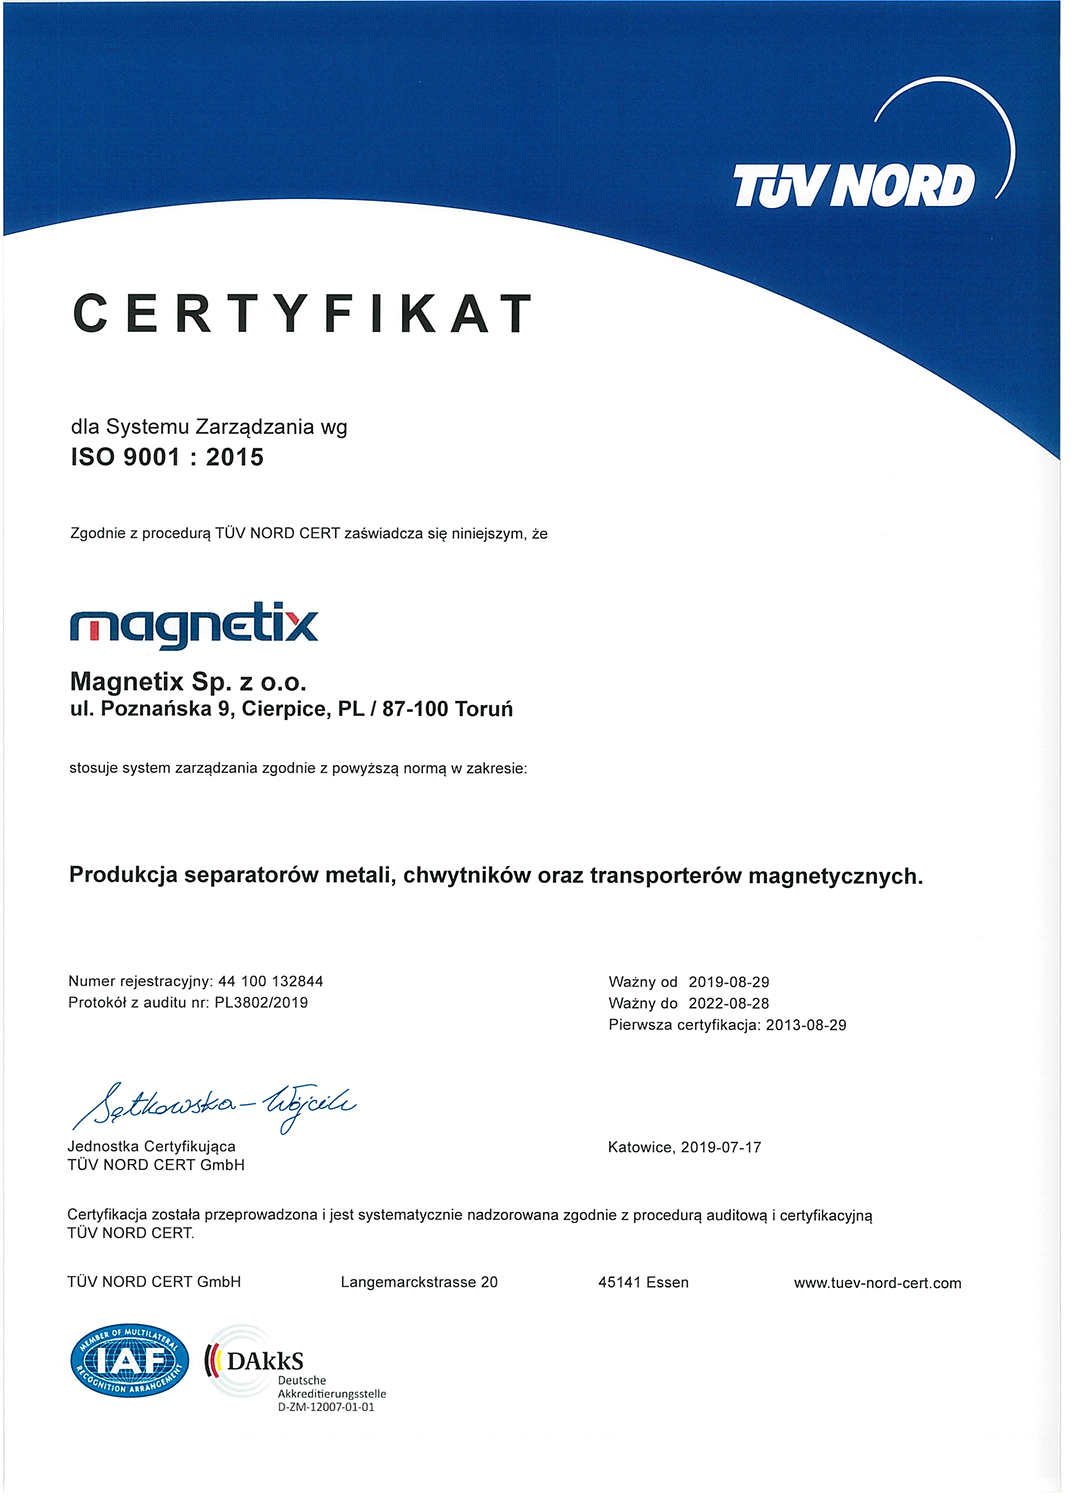 Magnetplatte (PM) - Magnetix